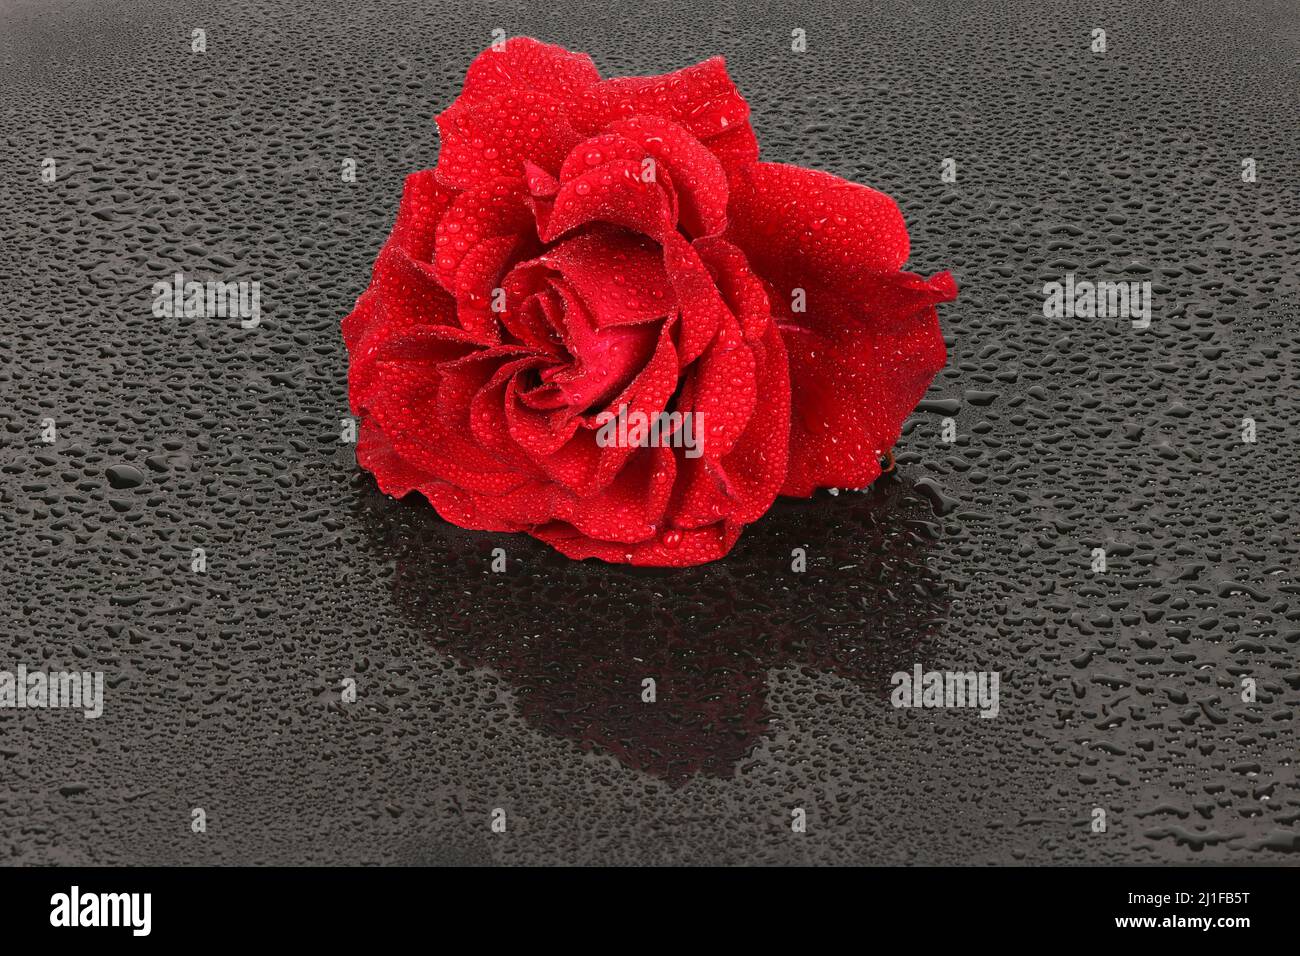 La photo studio d'une rose rouge sur fond noir. Saint Valentin. Photo haute résolution. Profondeur de champ complète. Banque D'Images